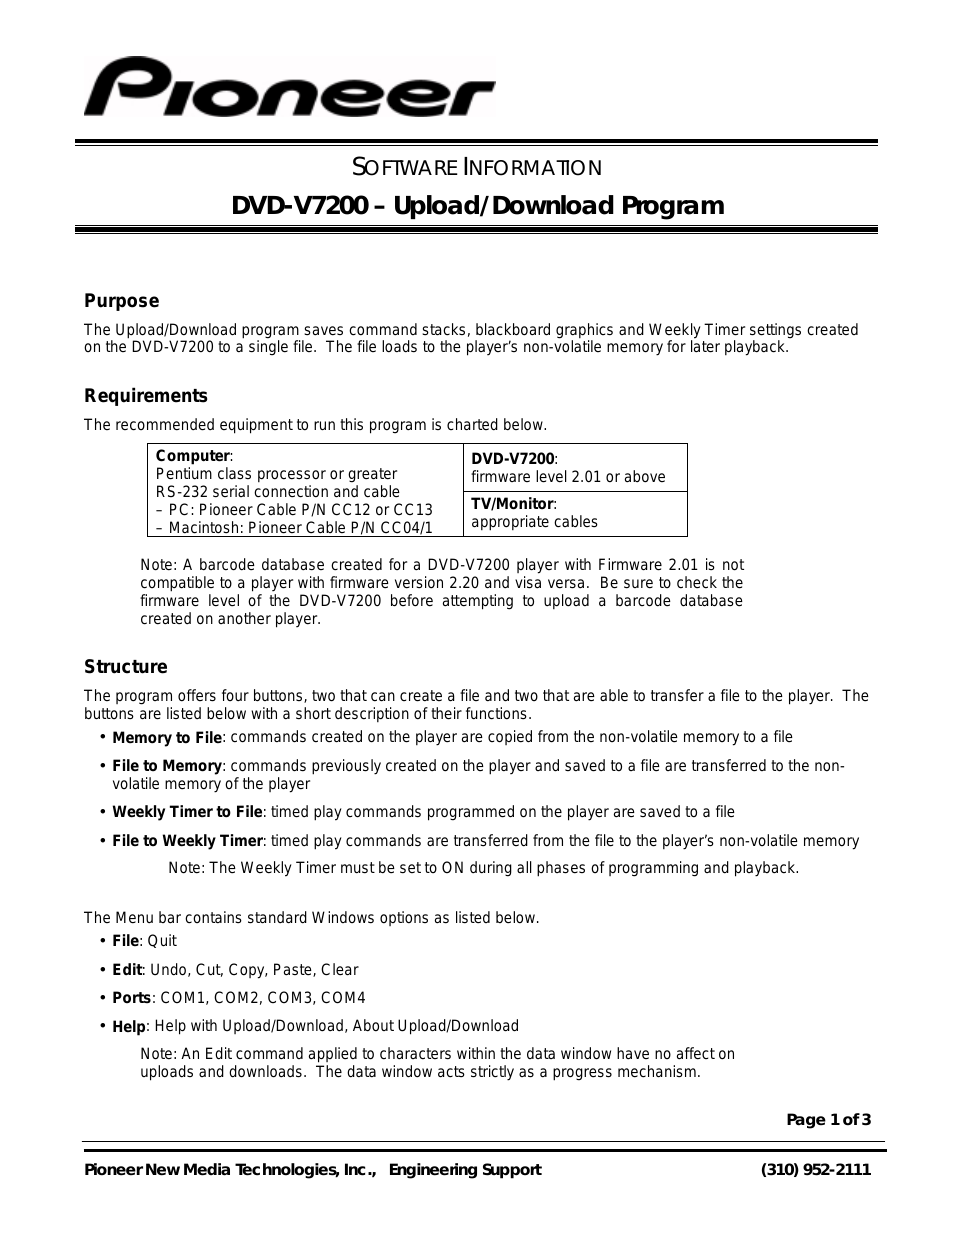 DVD Player DVD-V7200